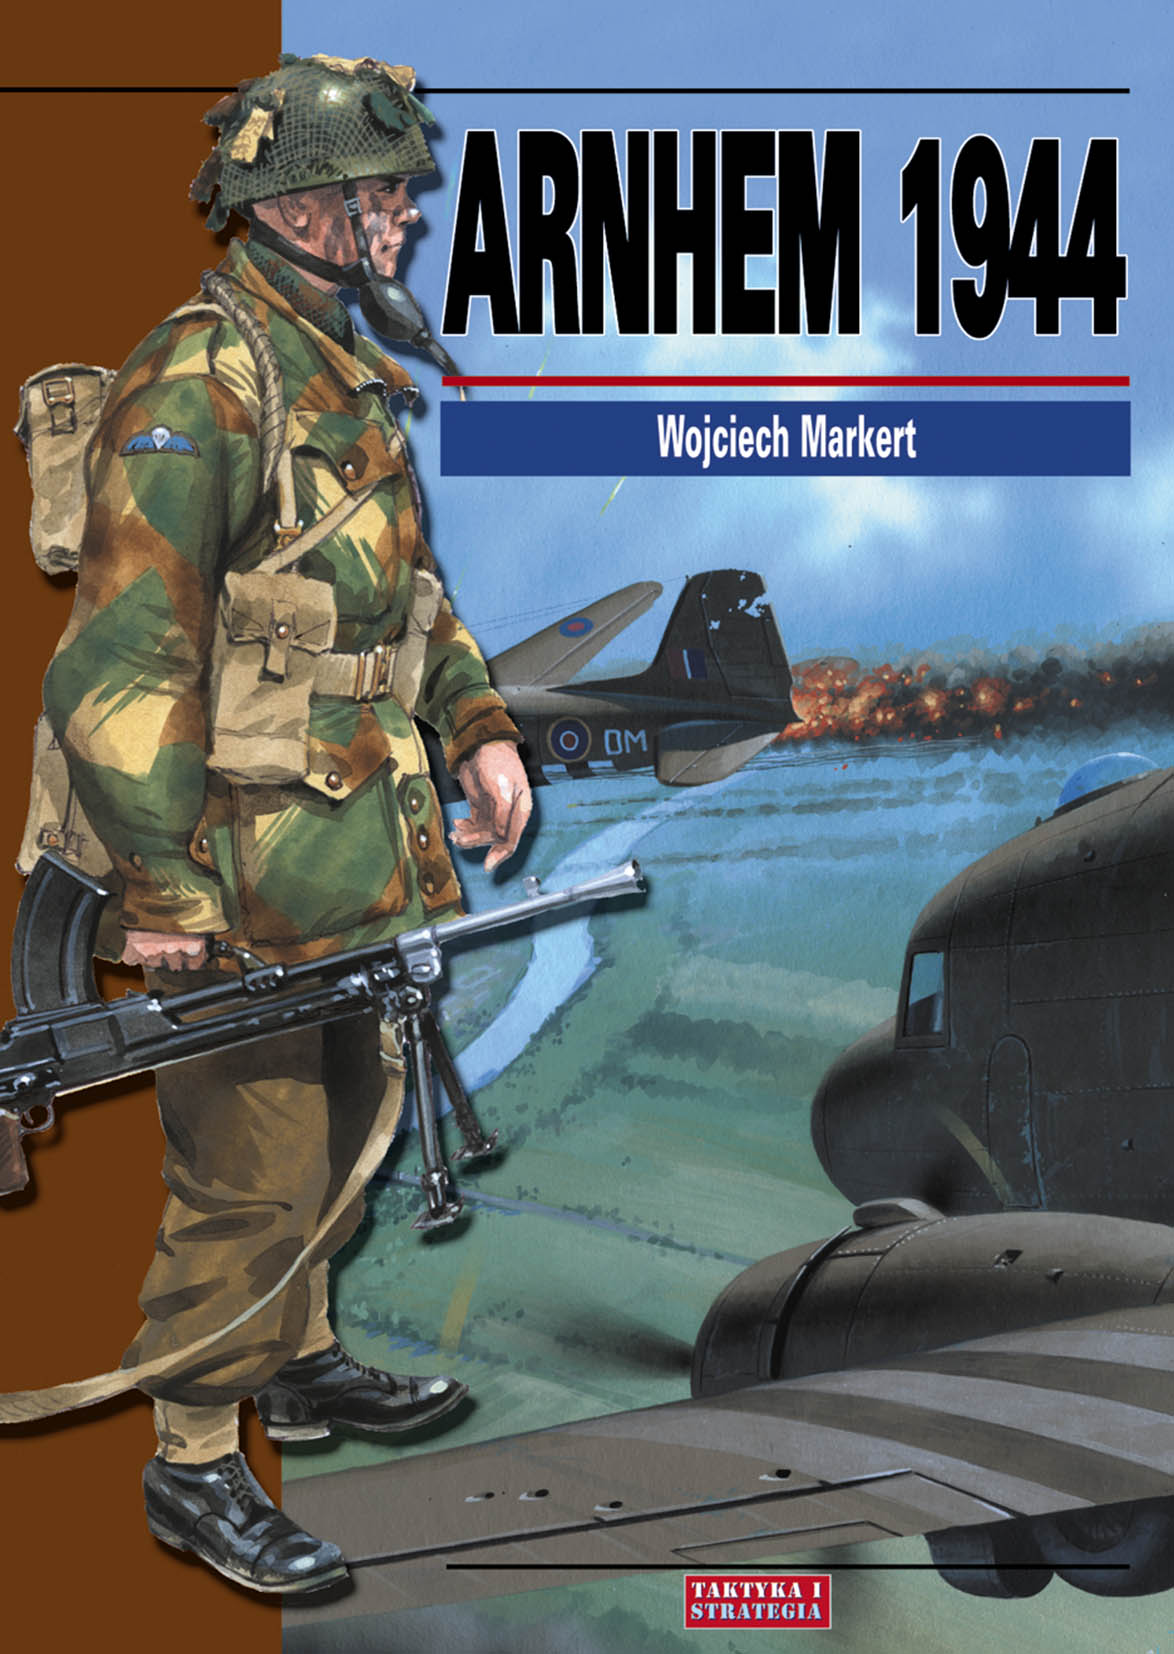 Książka Arnhem 1944 wydawnictwa Taktyka i Strategia